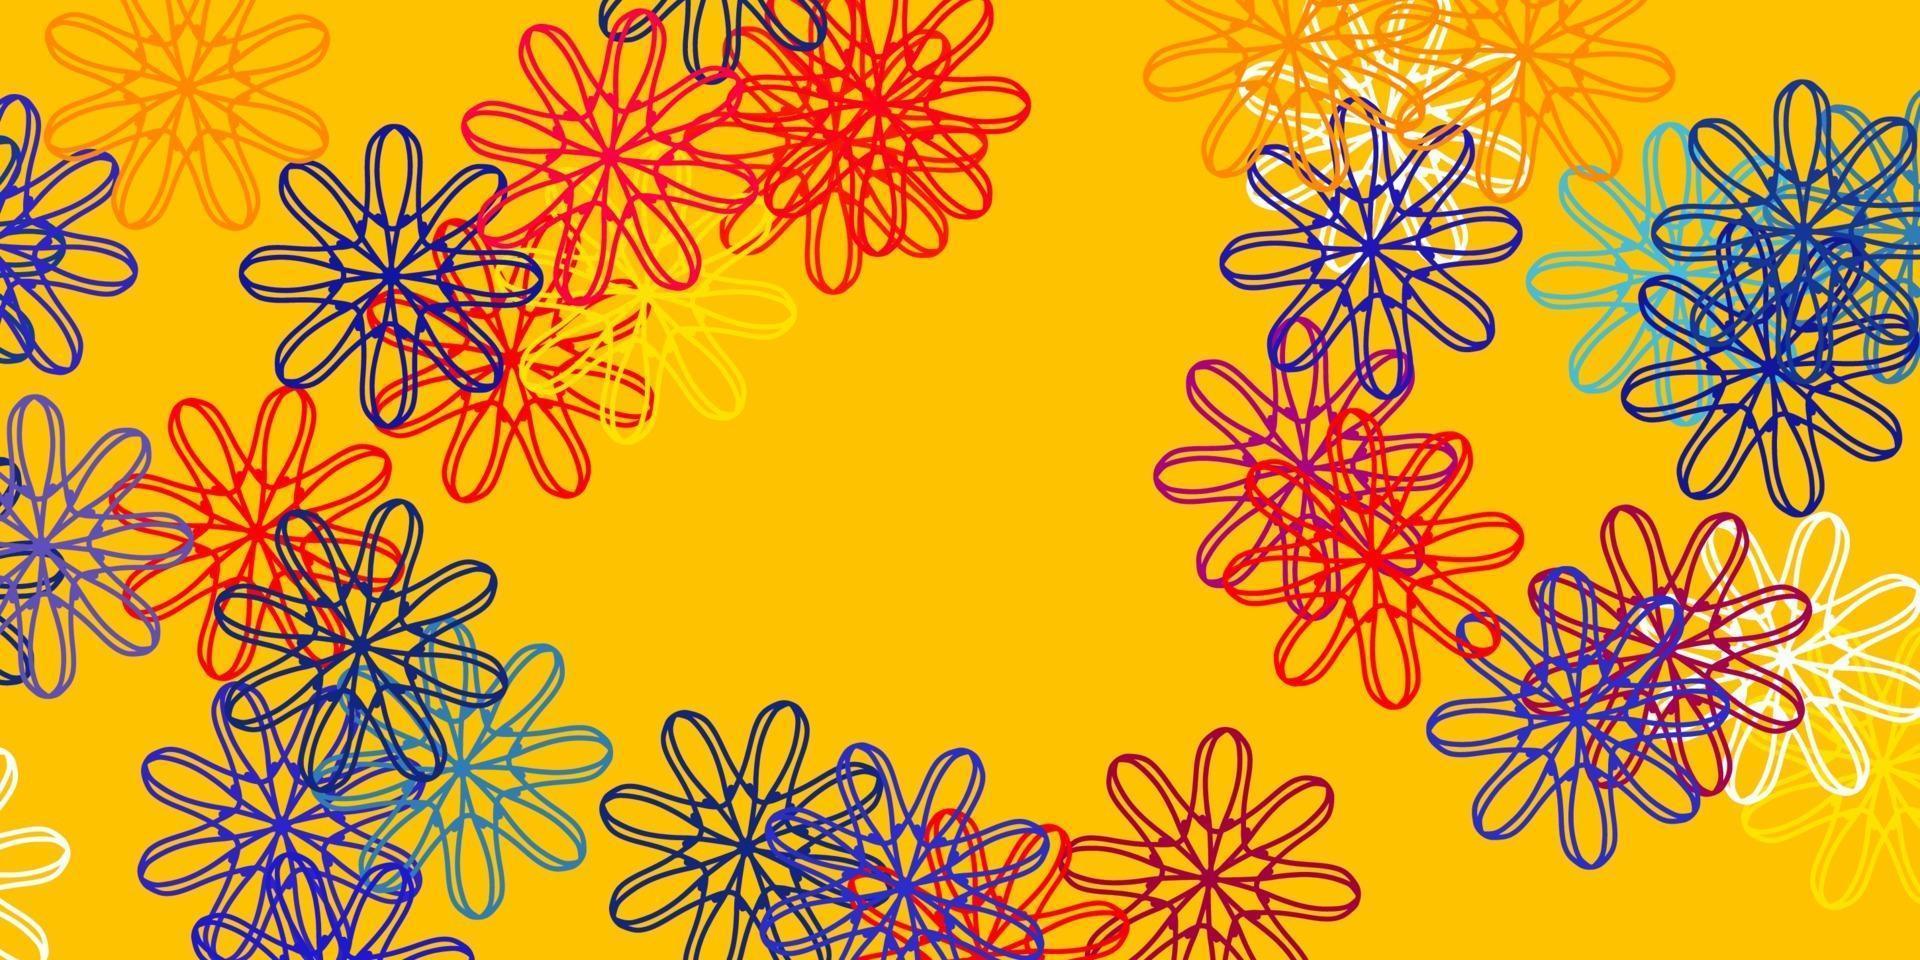 ilustraciones naturales del vector rojo claro, amarillo con flores.